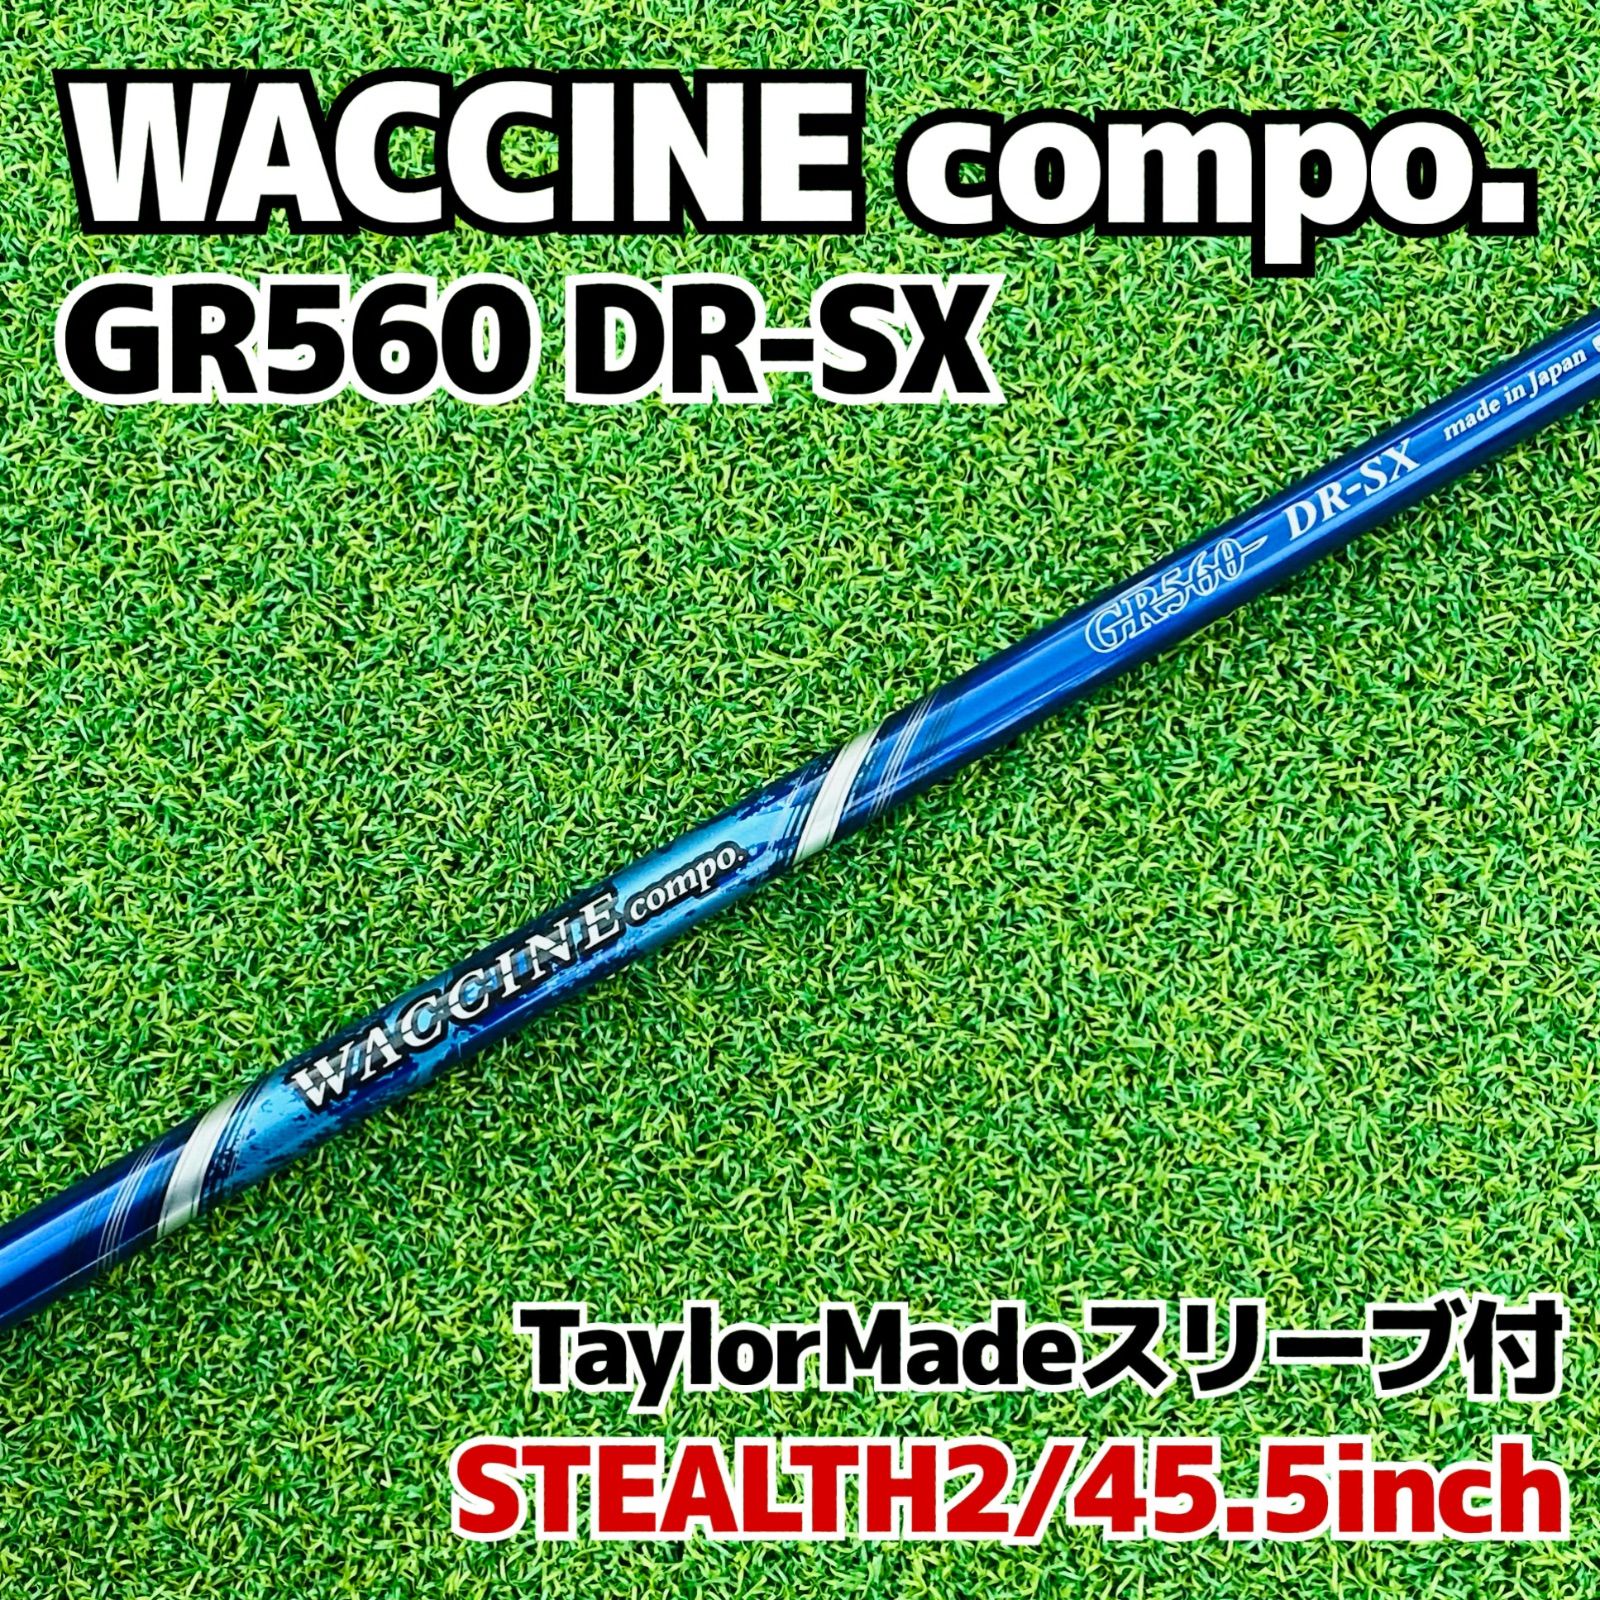 WACCINE compo GR560 DR-SX テーラーメイド用スリーブ付